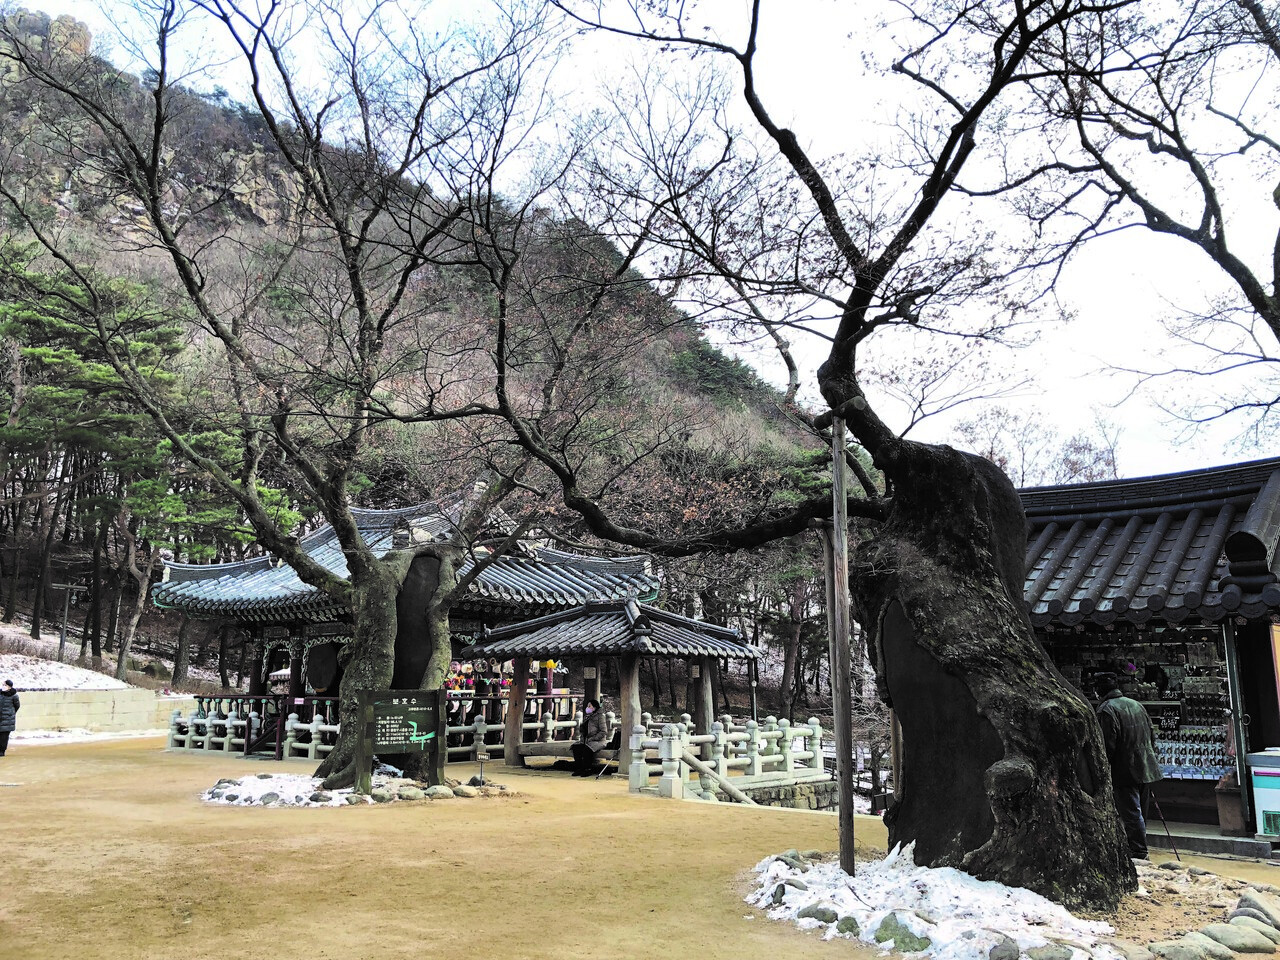 ▲ 사찰에 가면 500~1000년 된 느티나무를 만날 수 있다. 사진은 서울 호압사의 약사전 앞에서 자라고 있는 두 그루의 느티나무다. 500년 이상된 나무로 보호수로 지정돼 있다.